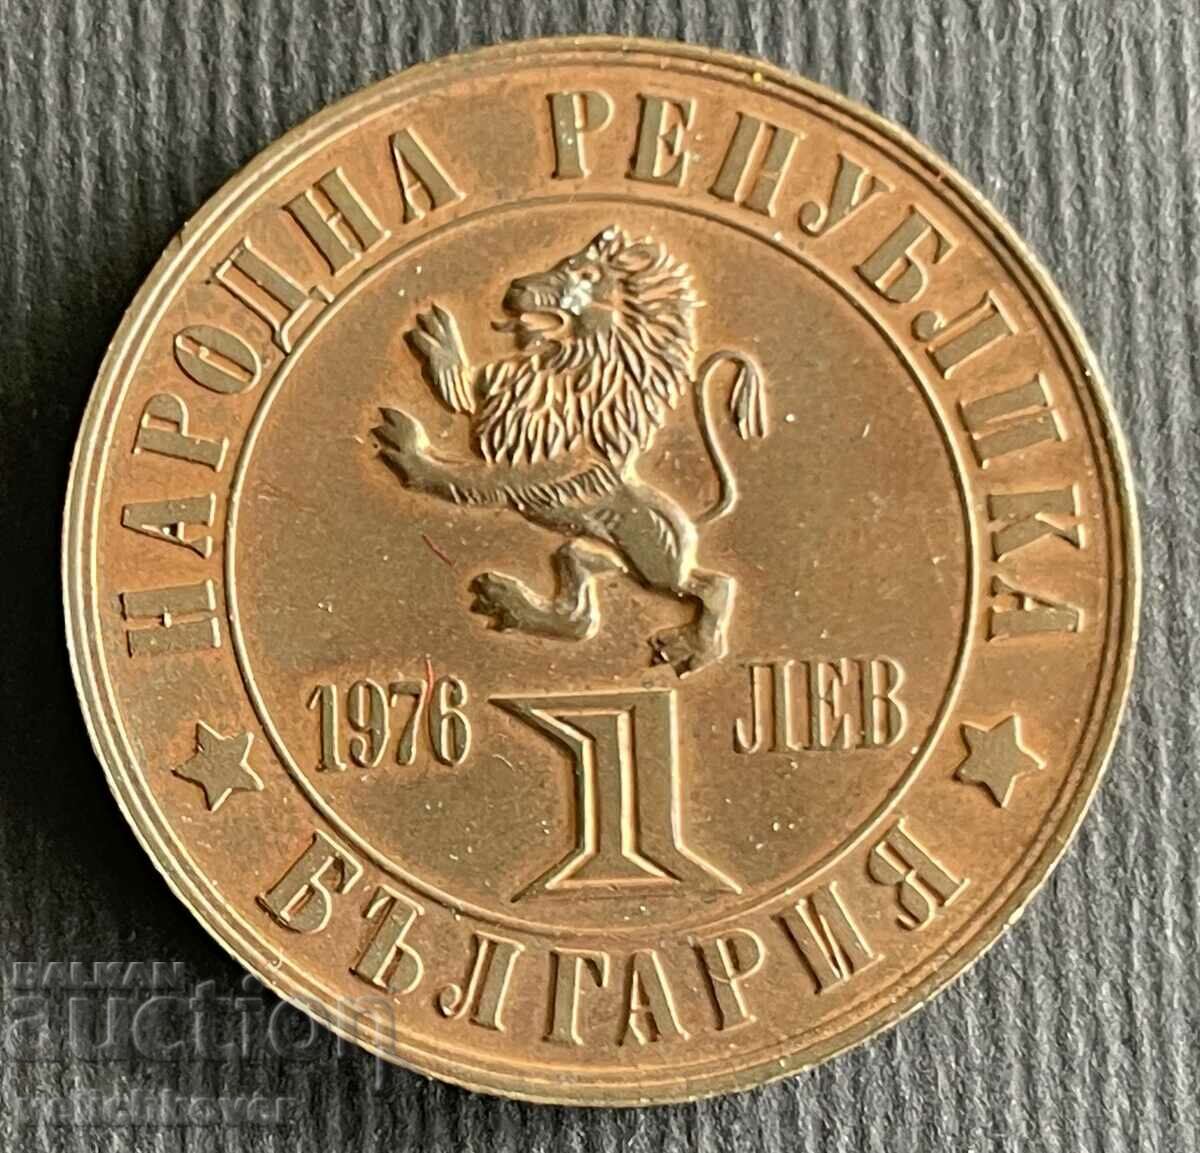 35217 Bulgaria 1 lev 1976 Revolta din aprilie med